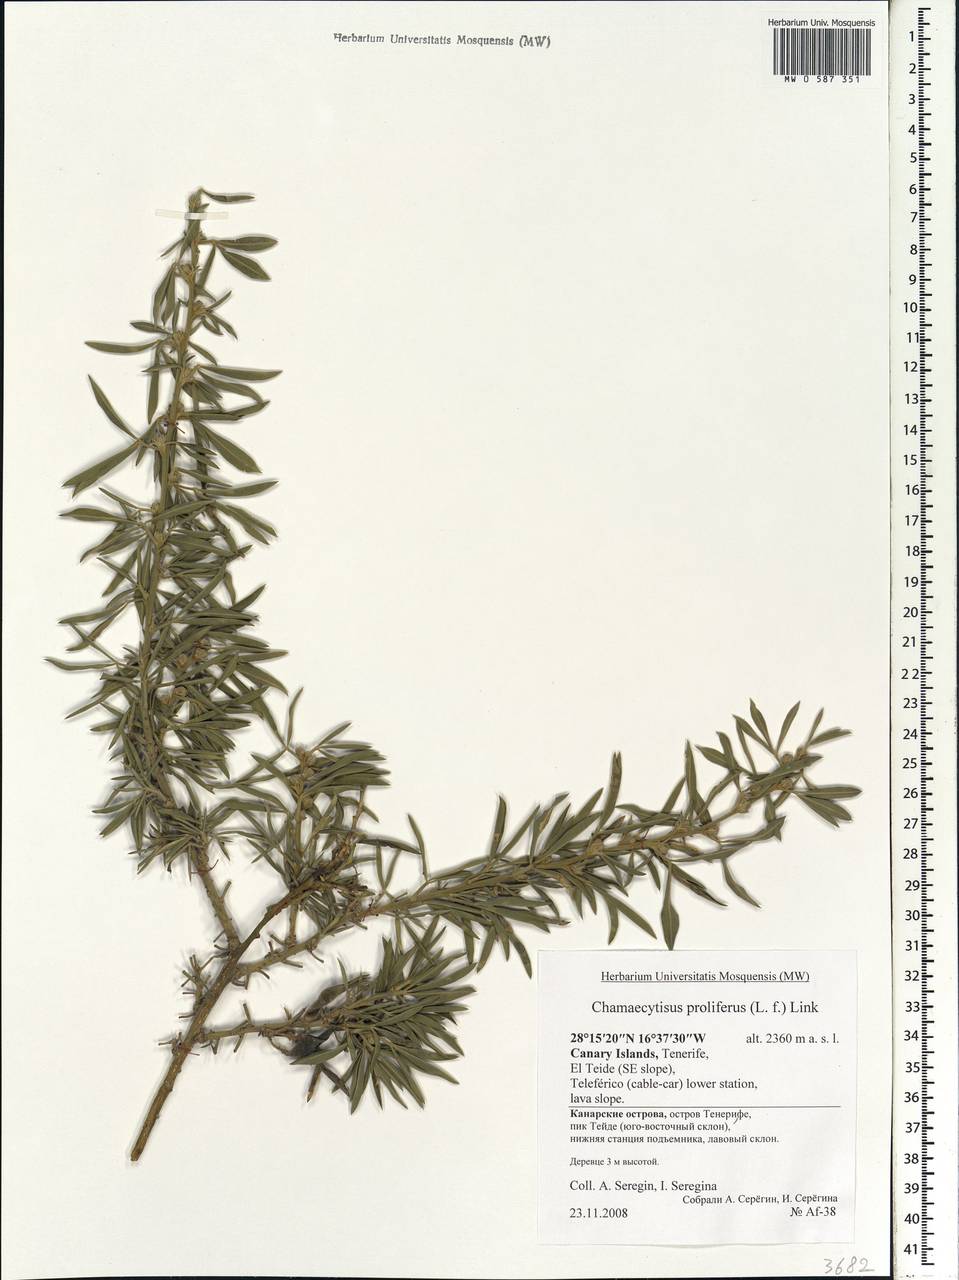 Cytisus proliferus L.f., Африка (AFR) (Испания)